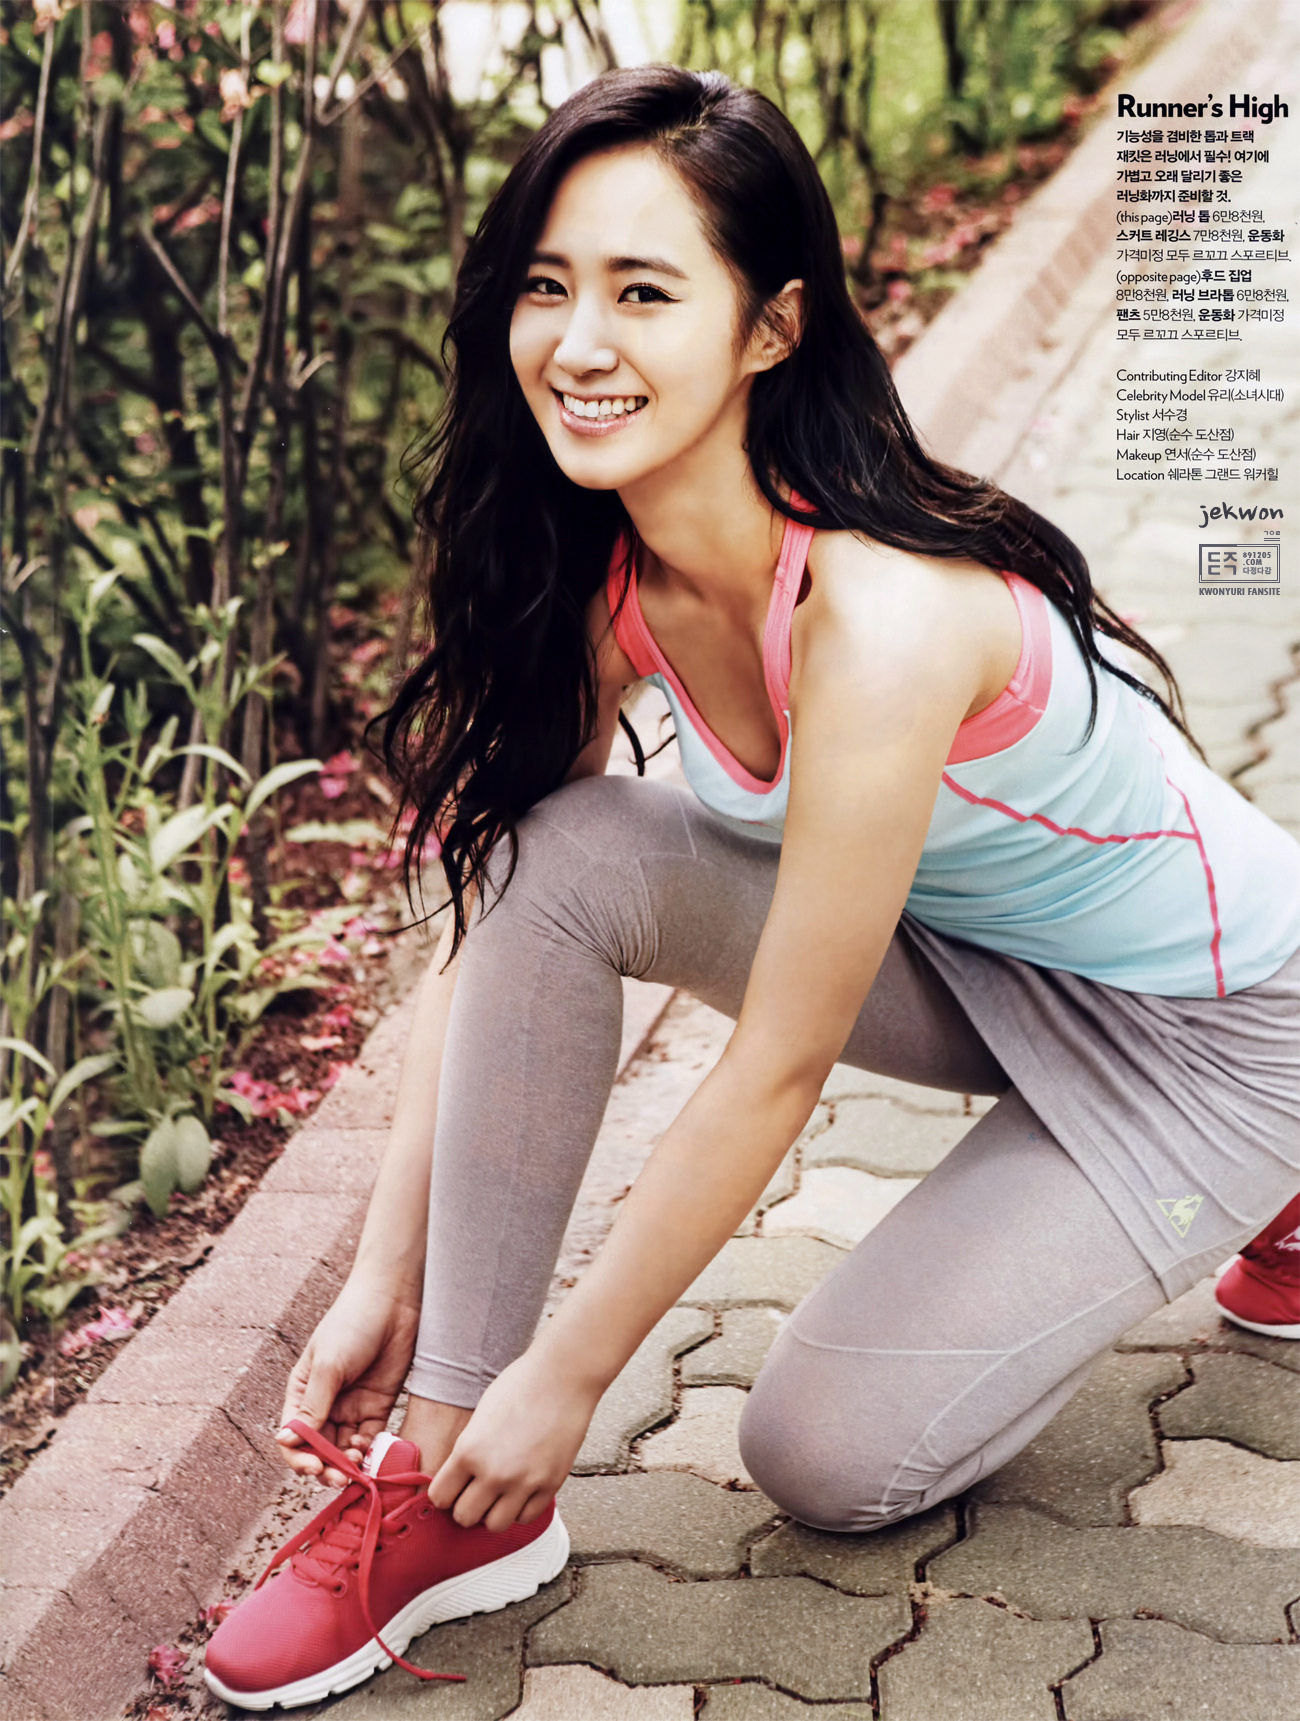 [PIC][21-05-2013]Yuri xuất hiện trên ấn phẩm tháng 6 của tạp chí "Cosmopolitan" 02488441519B664D328AD3